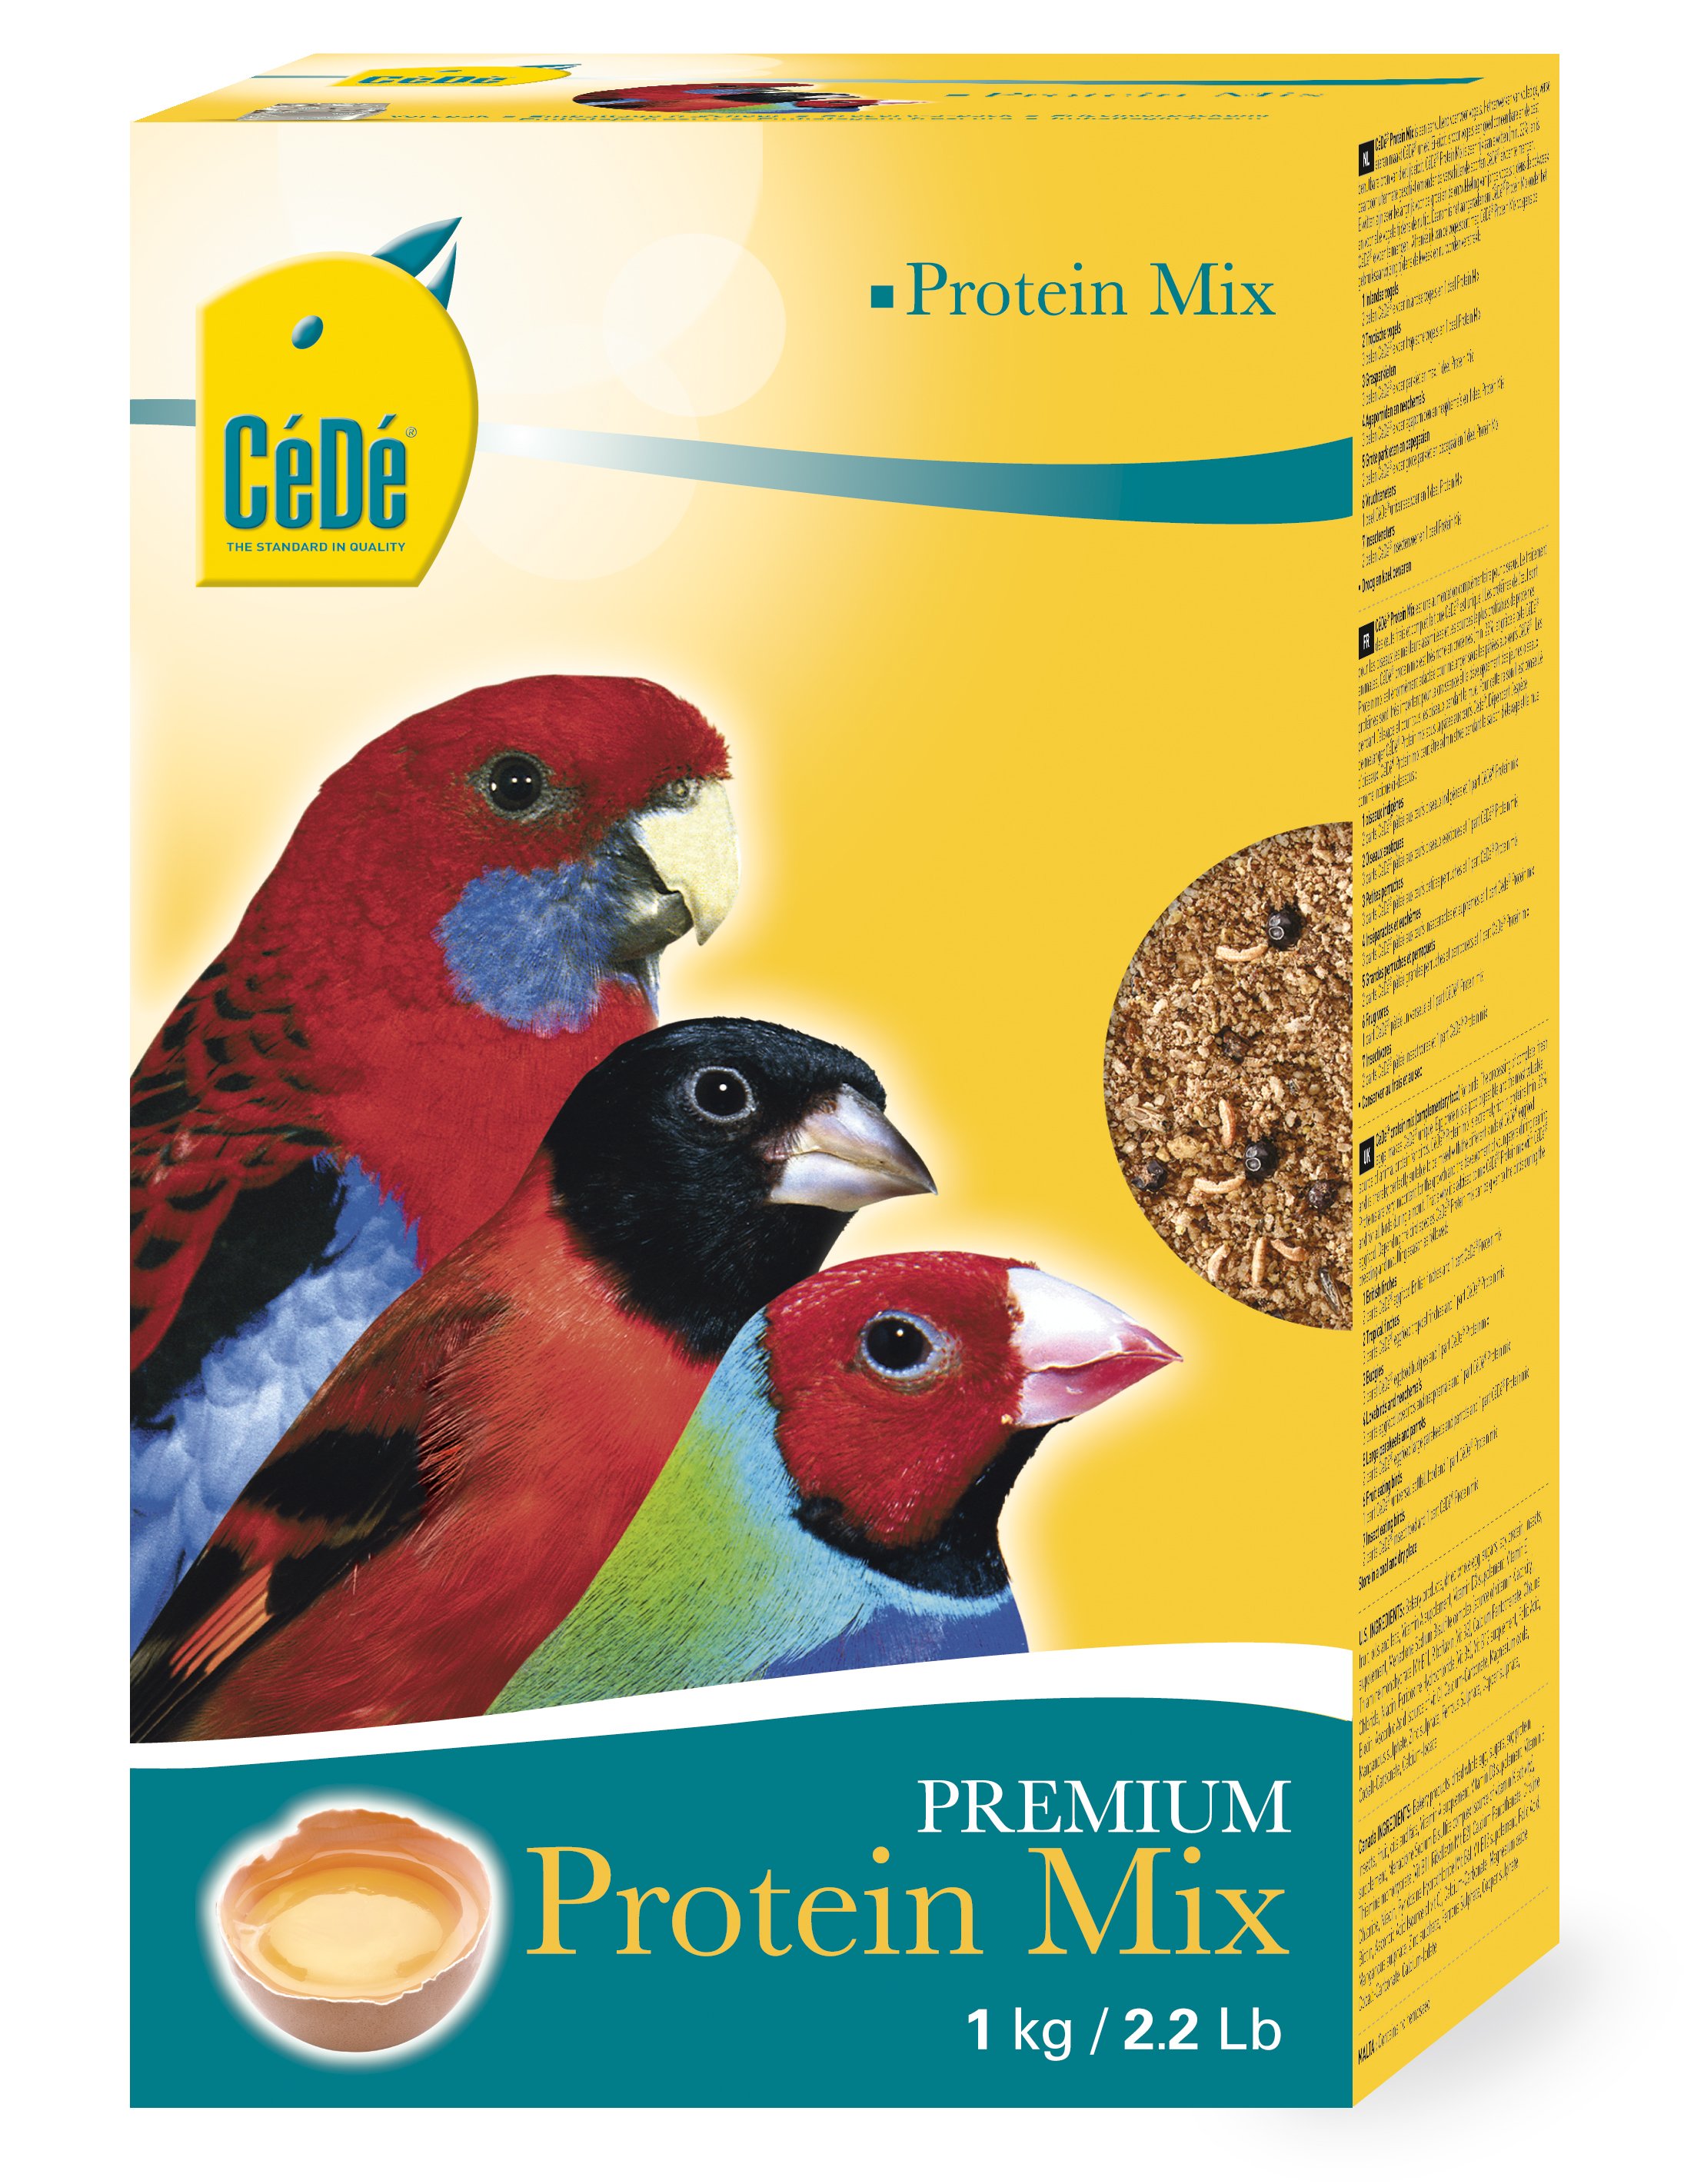 Cédé proteïne mix - Product shot